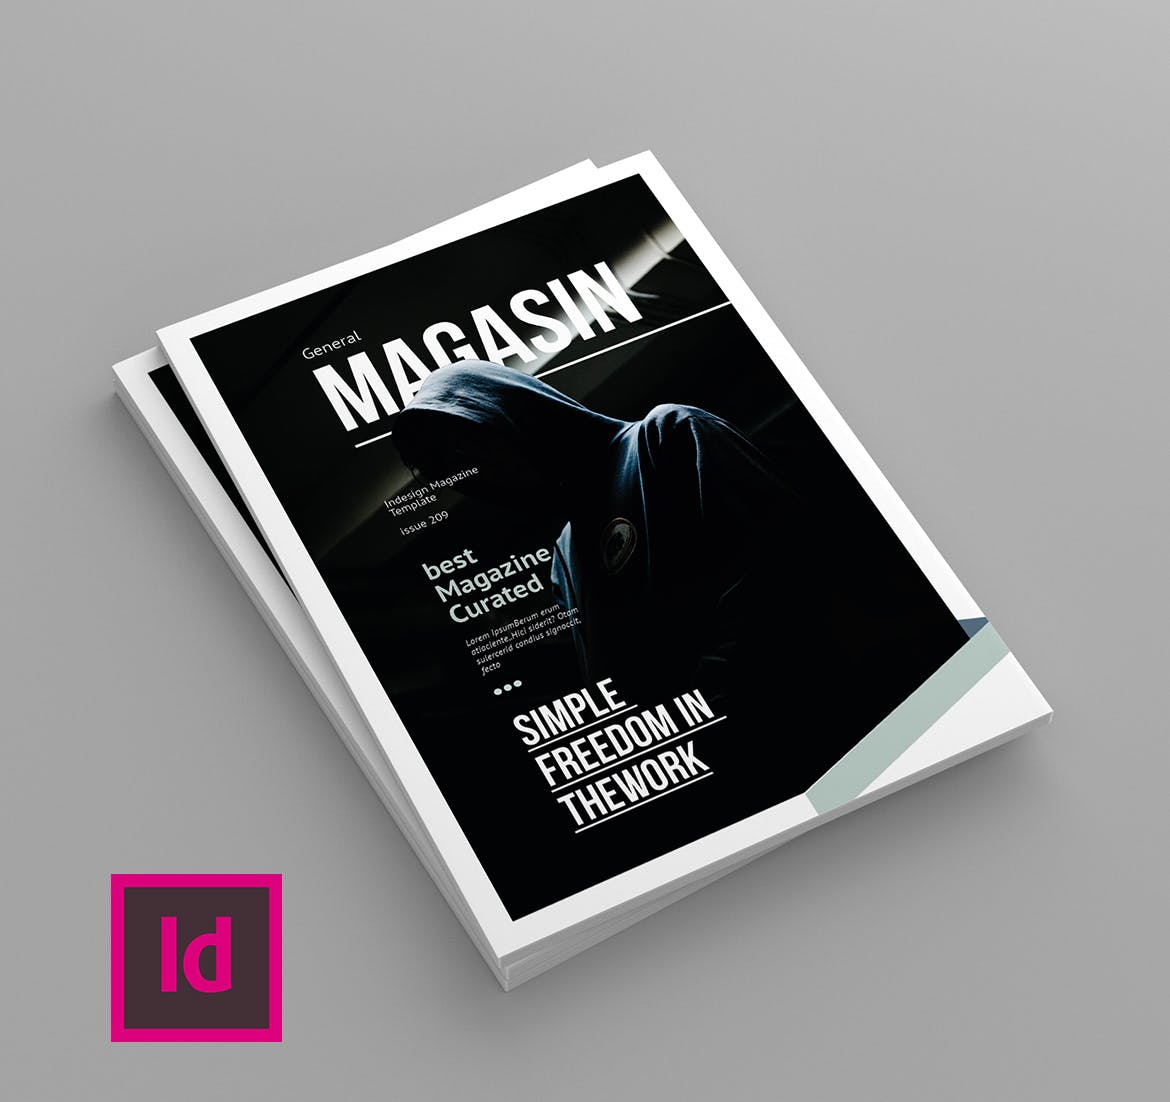 多用途企业宣传非凡图库精选杂志排版设计模板 Magasin – Magazine Template插图(1)